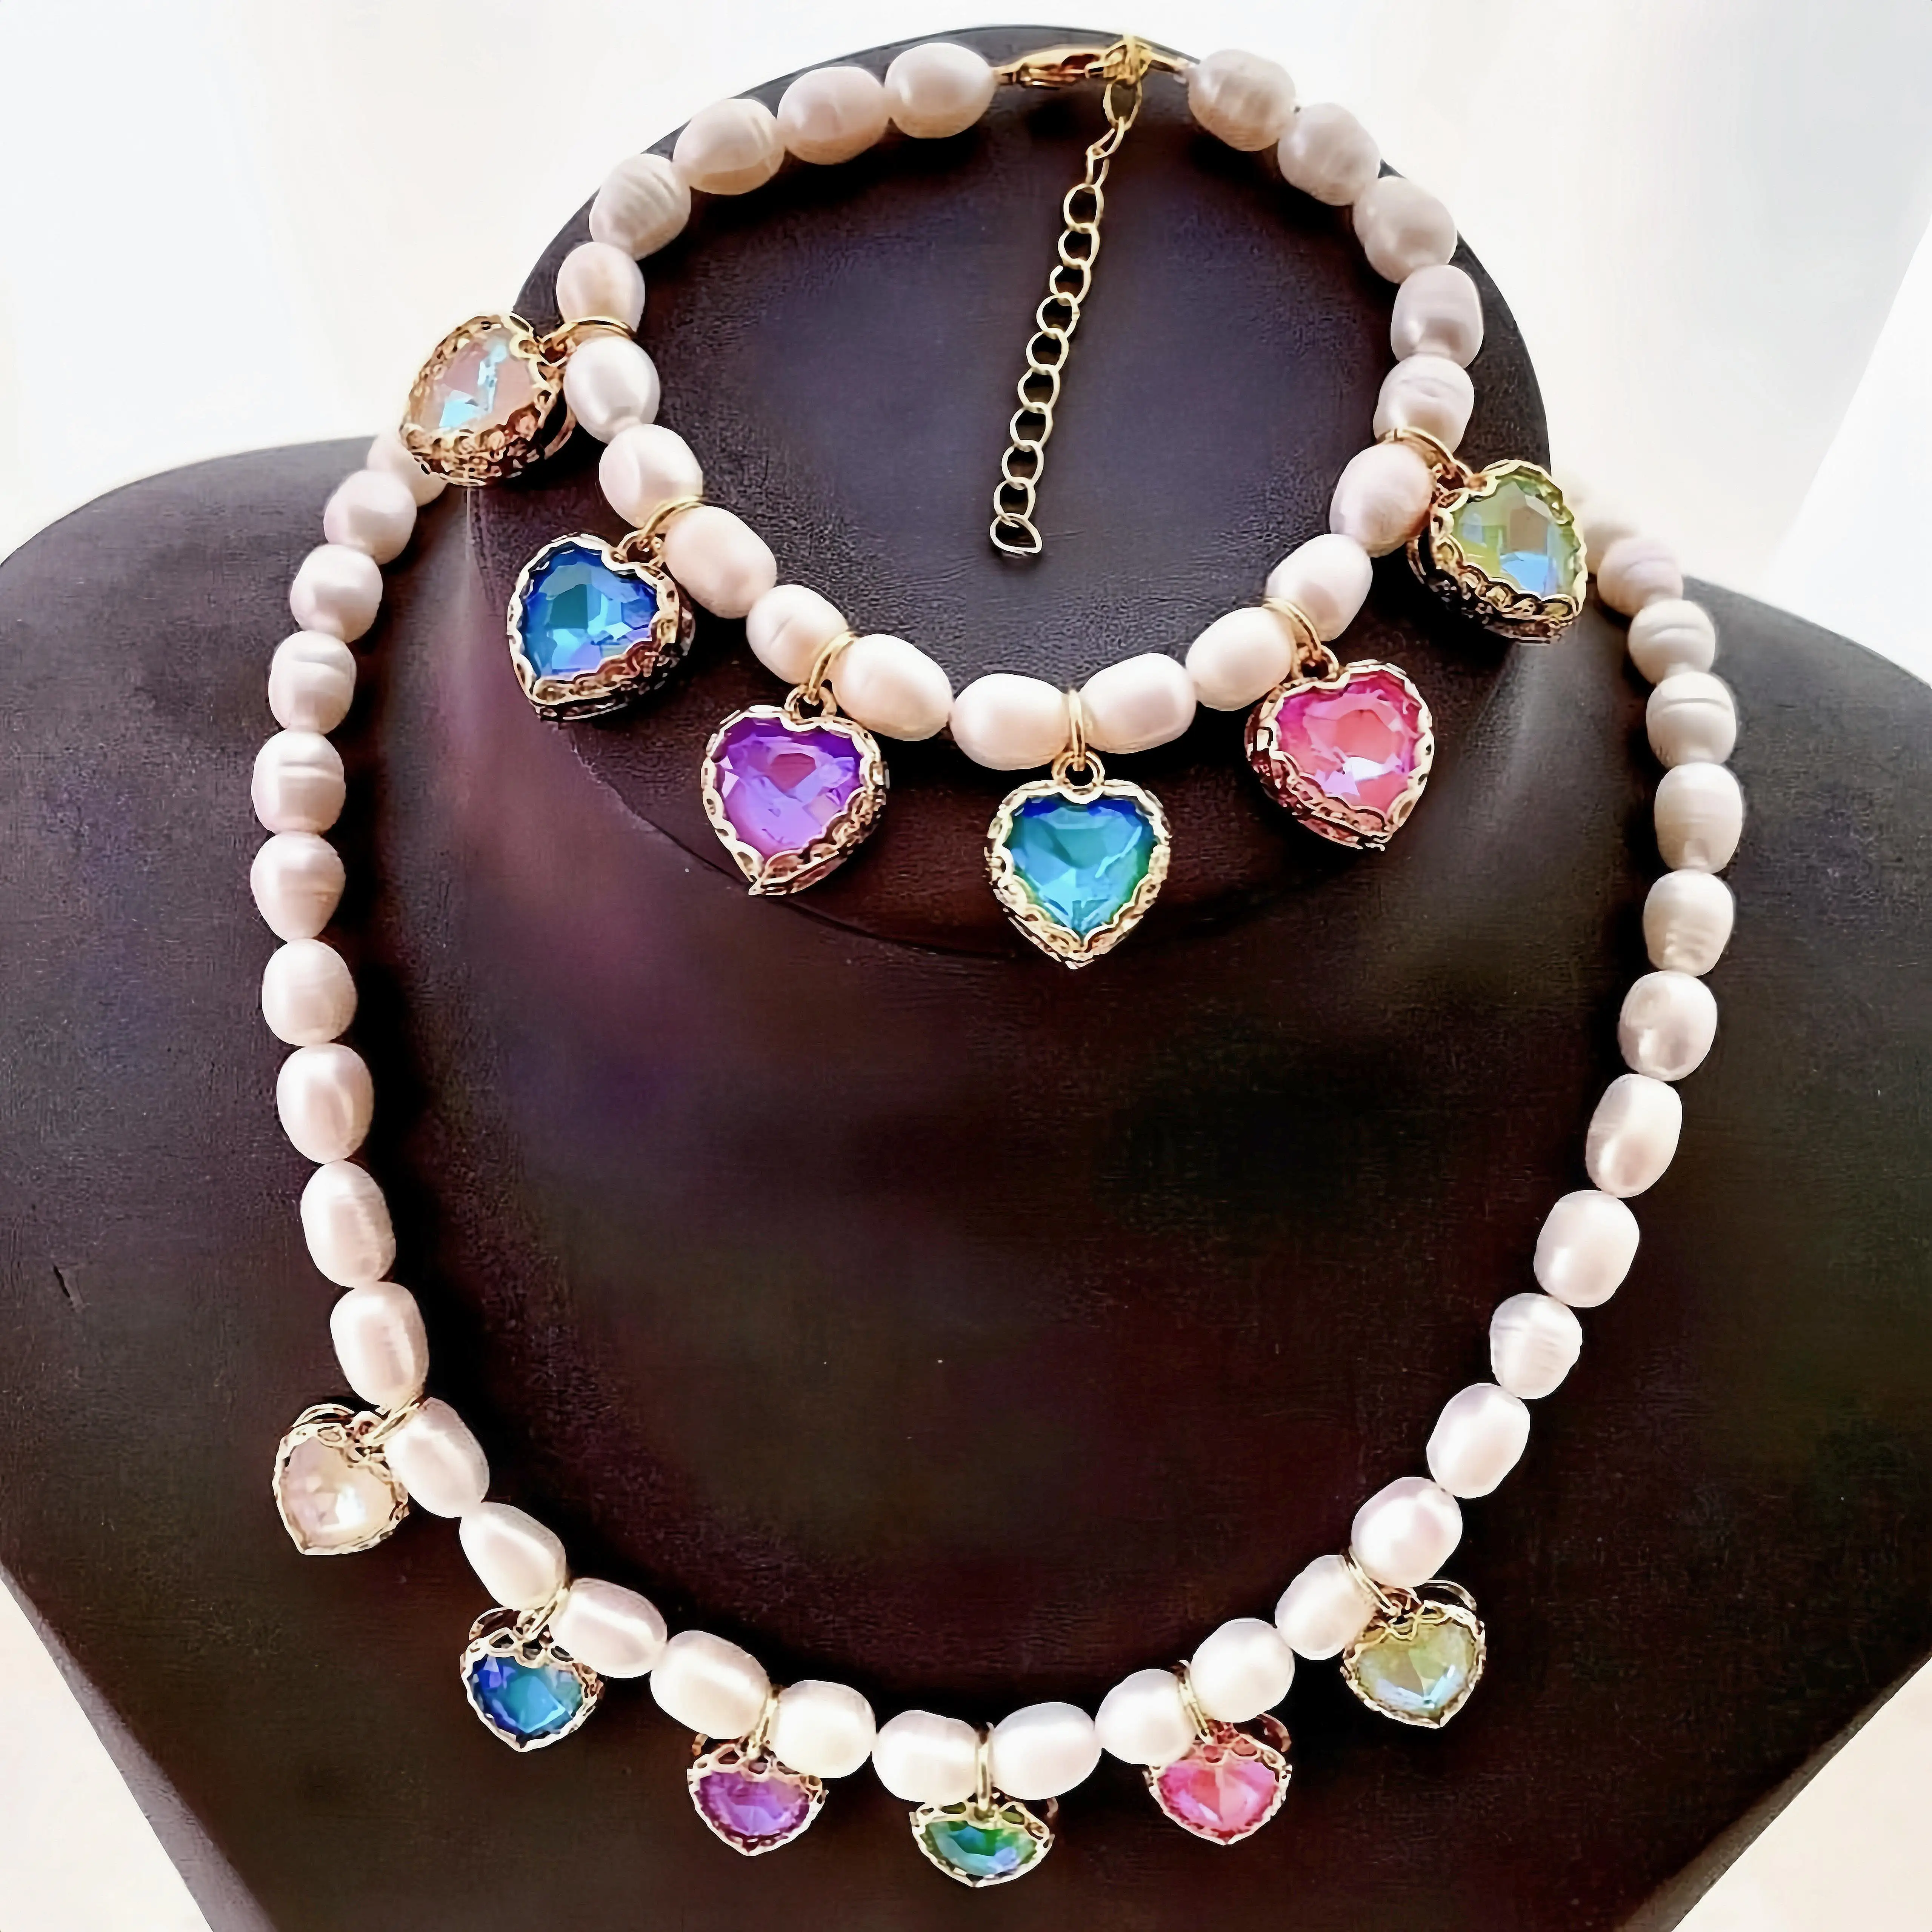 Nuevo diseño de perlas naturales de agua dulce con cuentas y collar con colgante de corazón colorido, conjunto de pulsera de joyería impermeable delicada para mujer